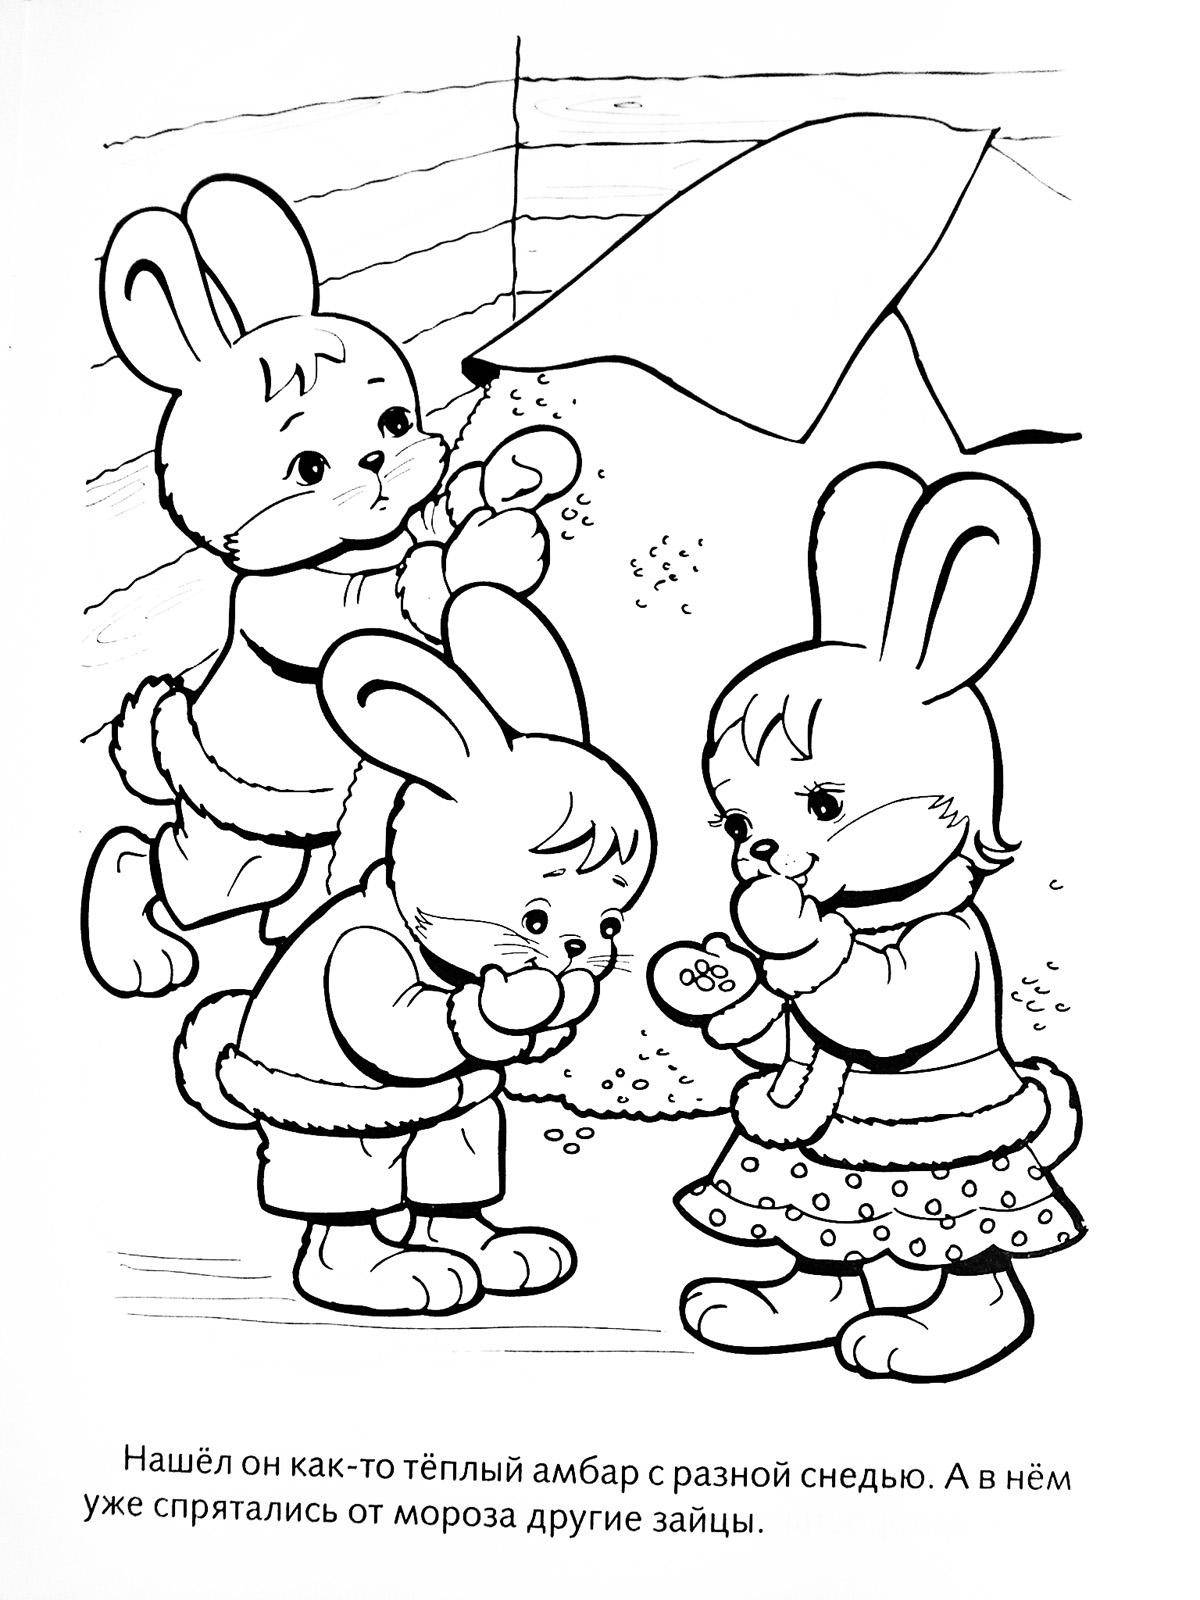 Опис: розмальовки  Малюнок їдять зайчиків. Категорія: домашні тварини. Теги:  заєць, кролик.